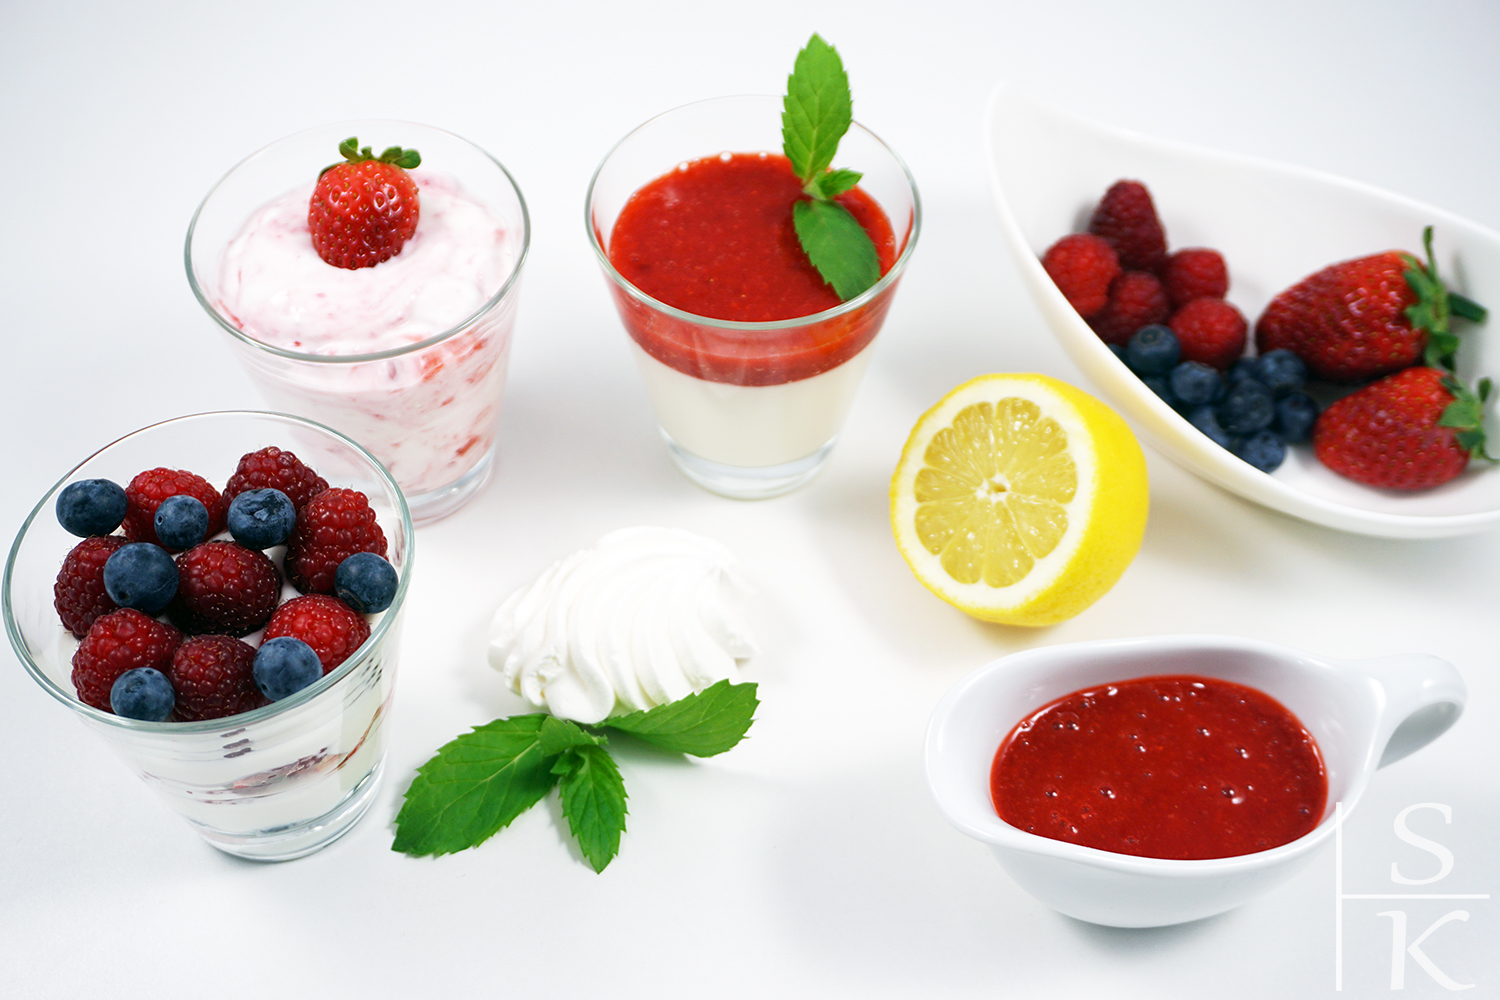 Rezepte für Dessert-Variationen mit Erdbeeren auf Horizont-Blog, Saskia Katharina Most